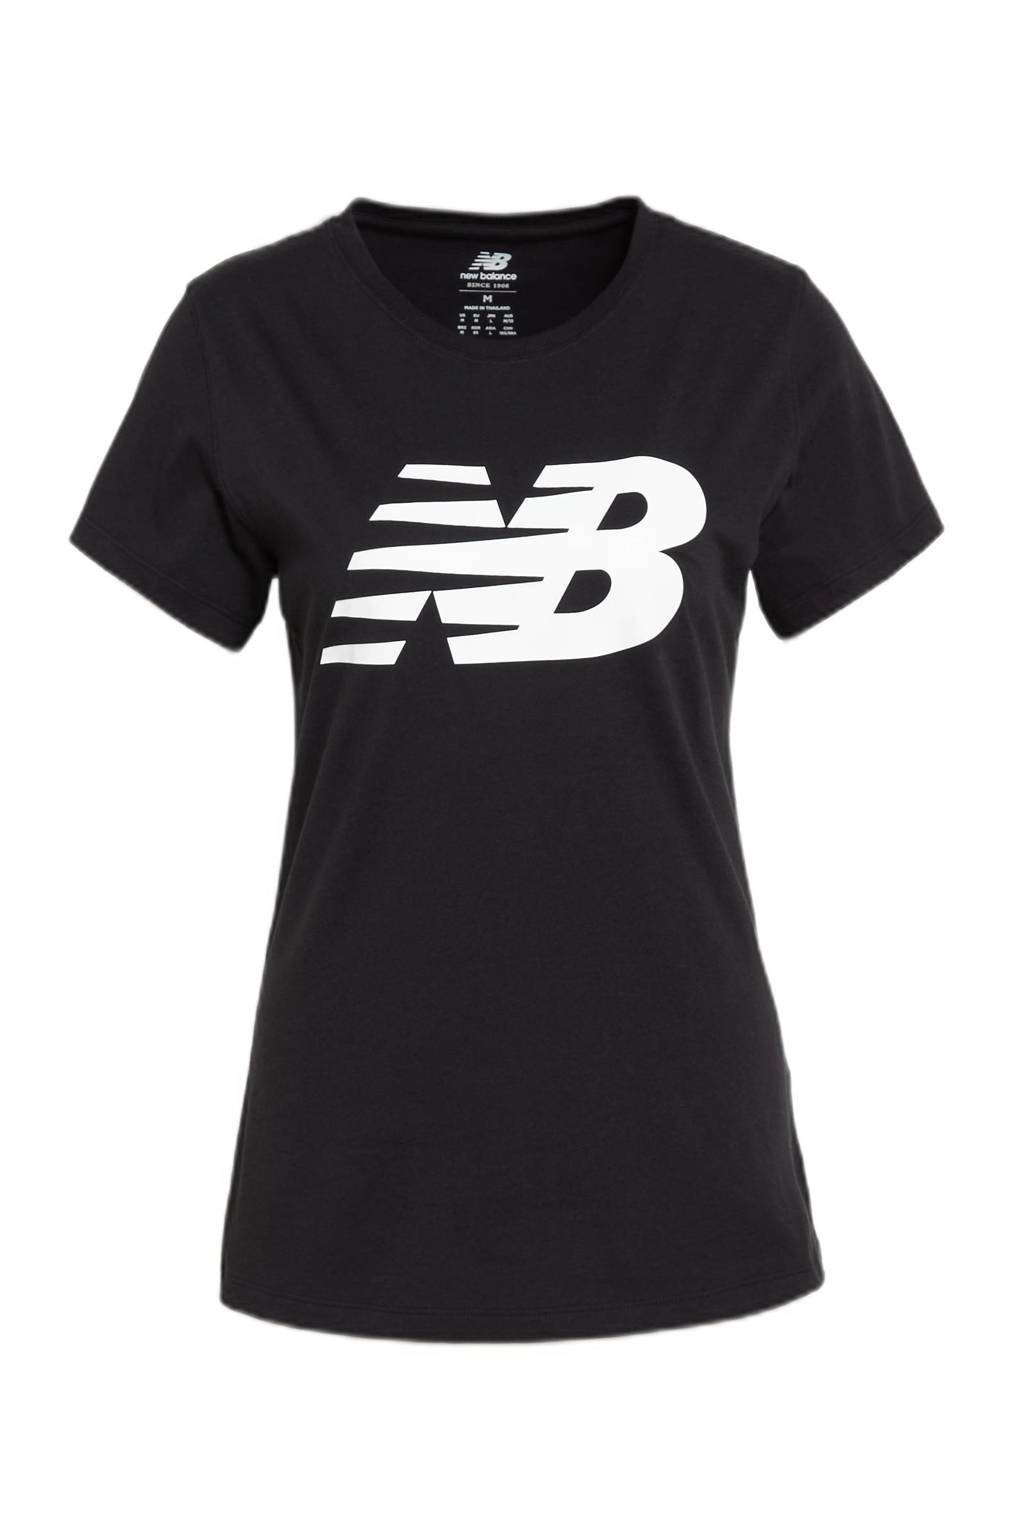 New Balance T-shirt zwart/wit